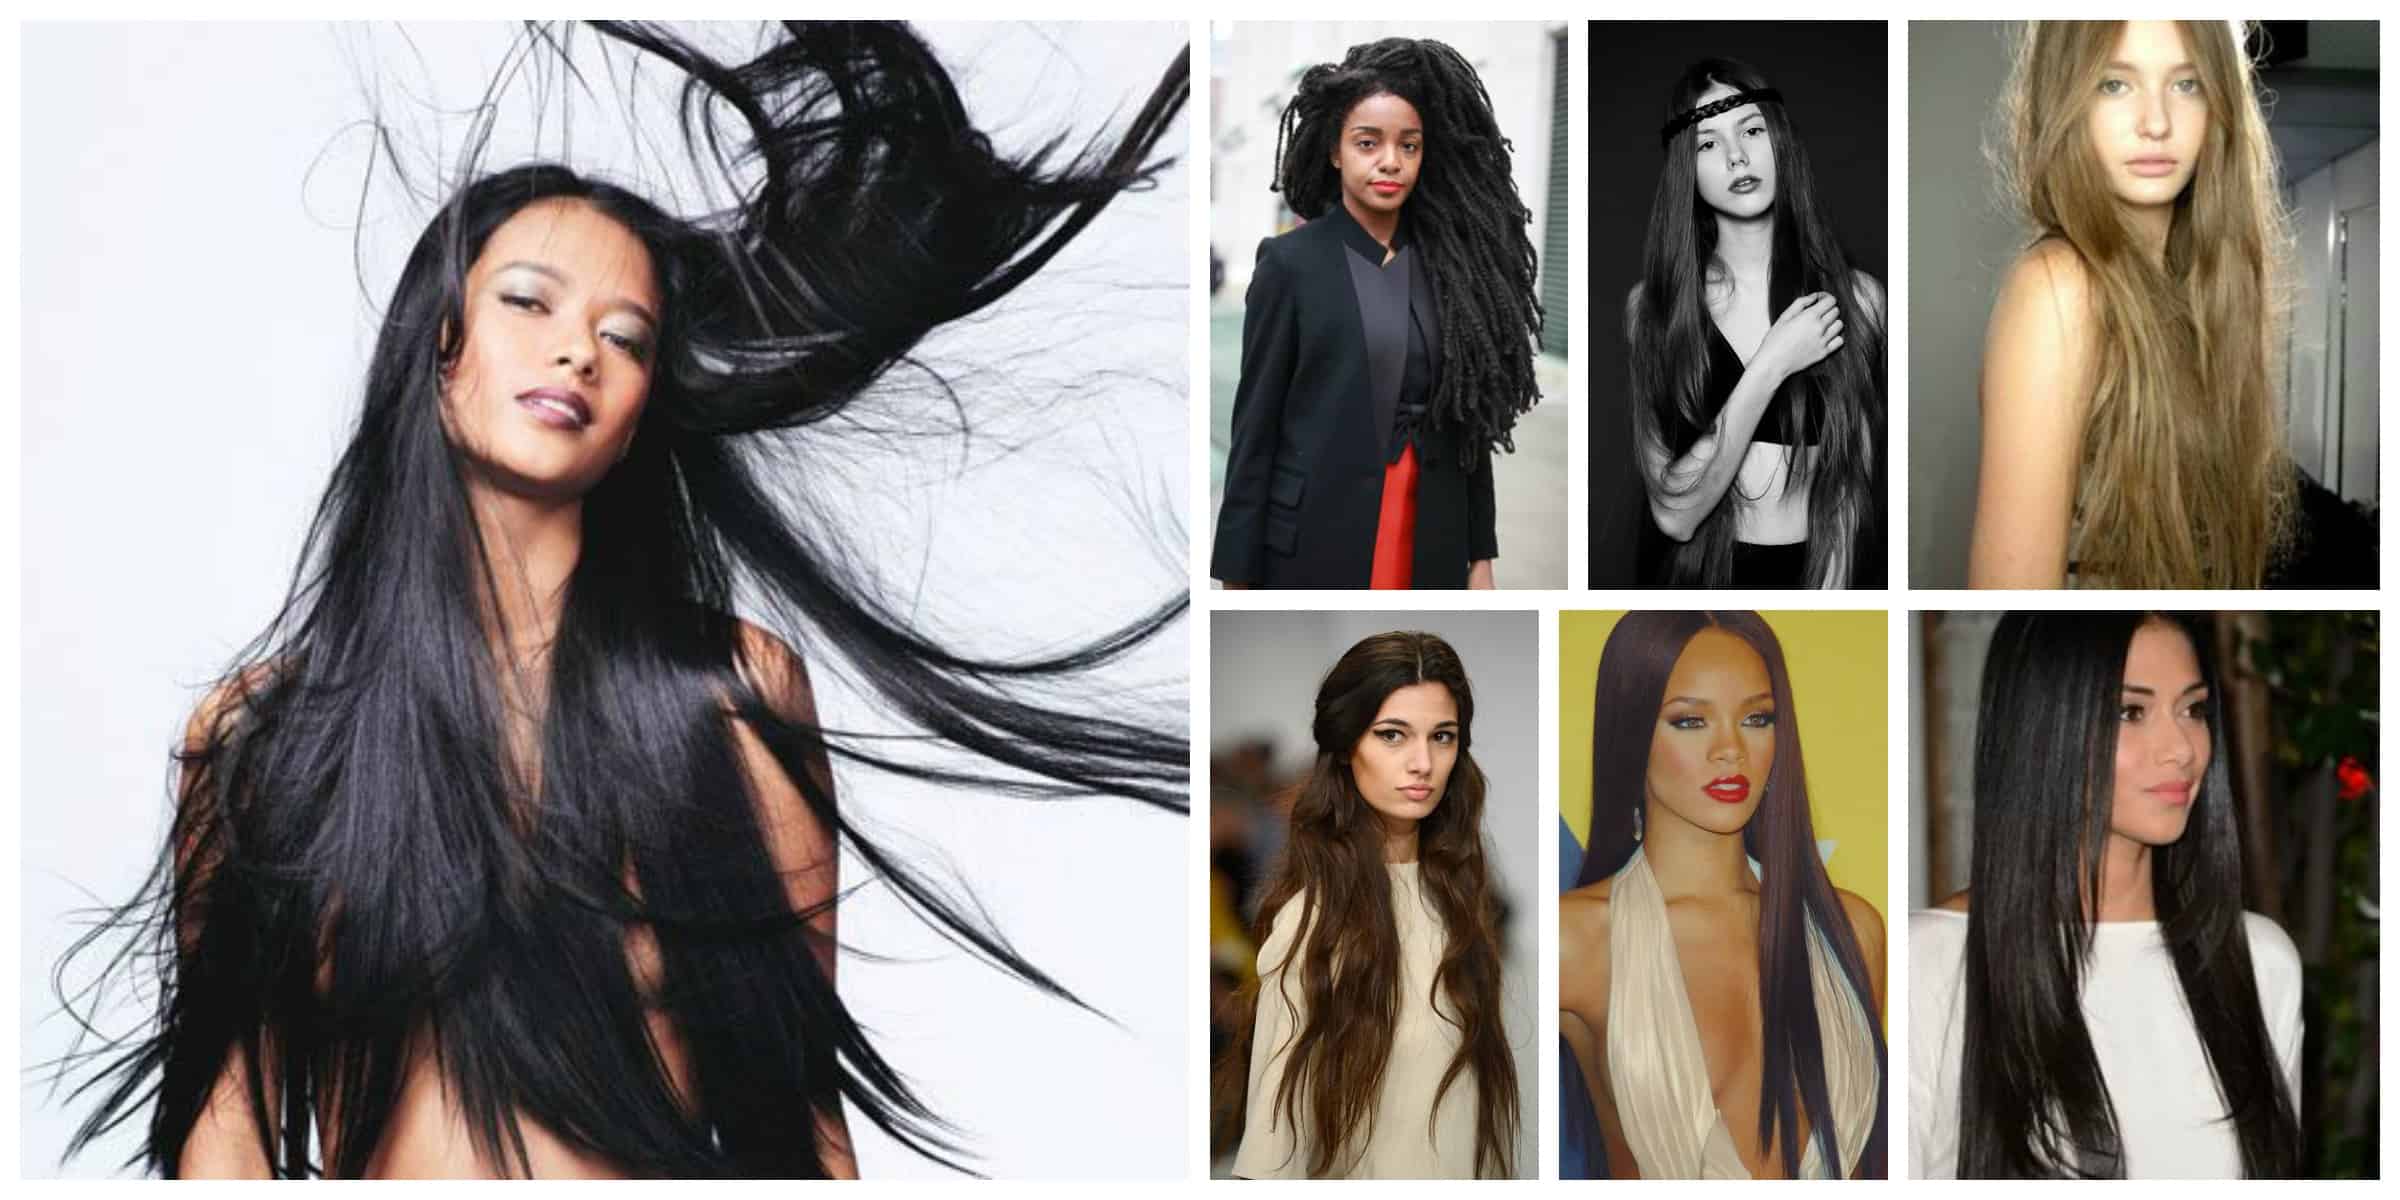 CherHair: Is Waist-Length Hair The New Look? - The Fashion Tag Blog